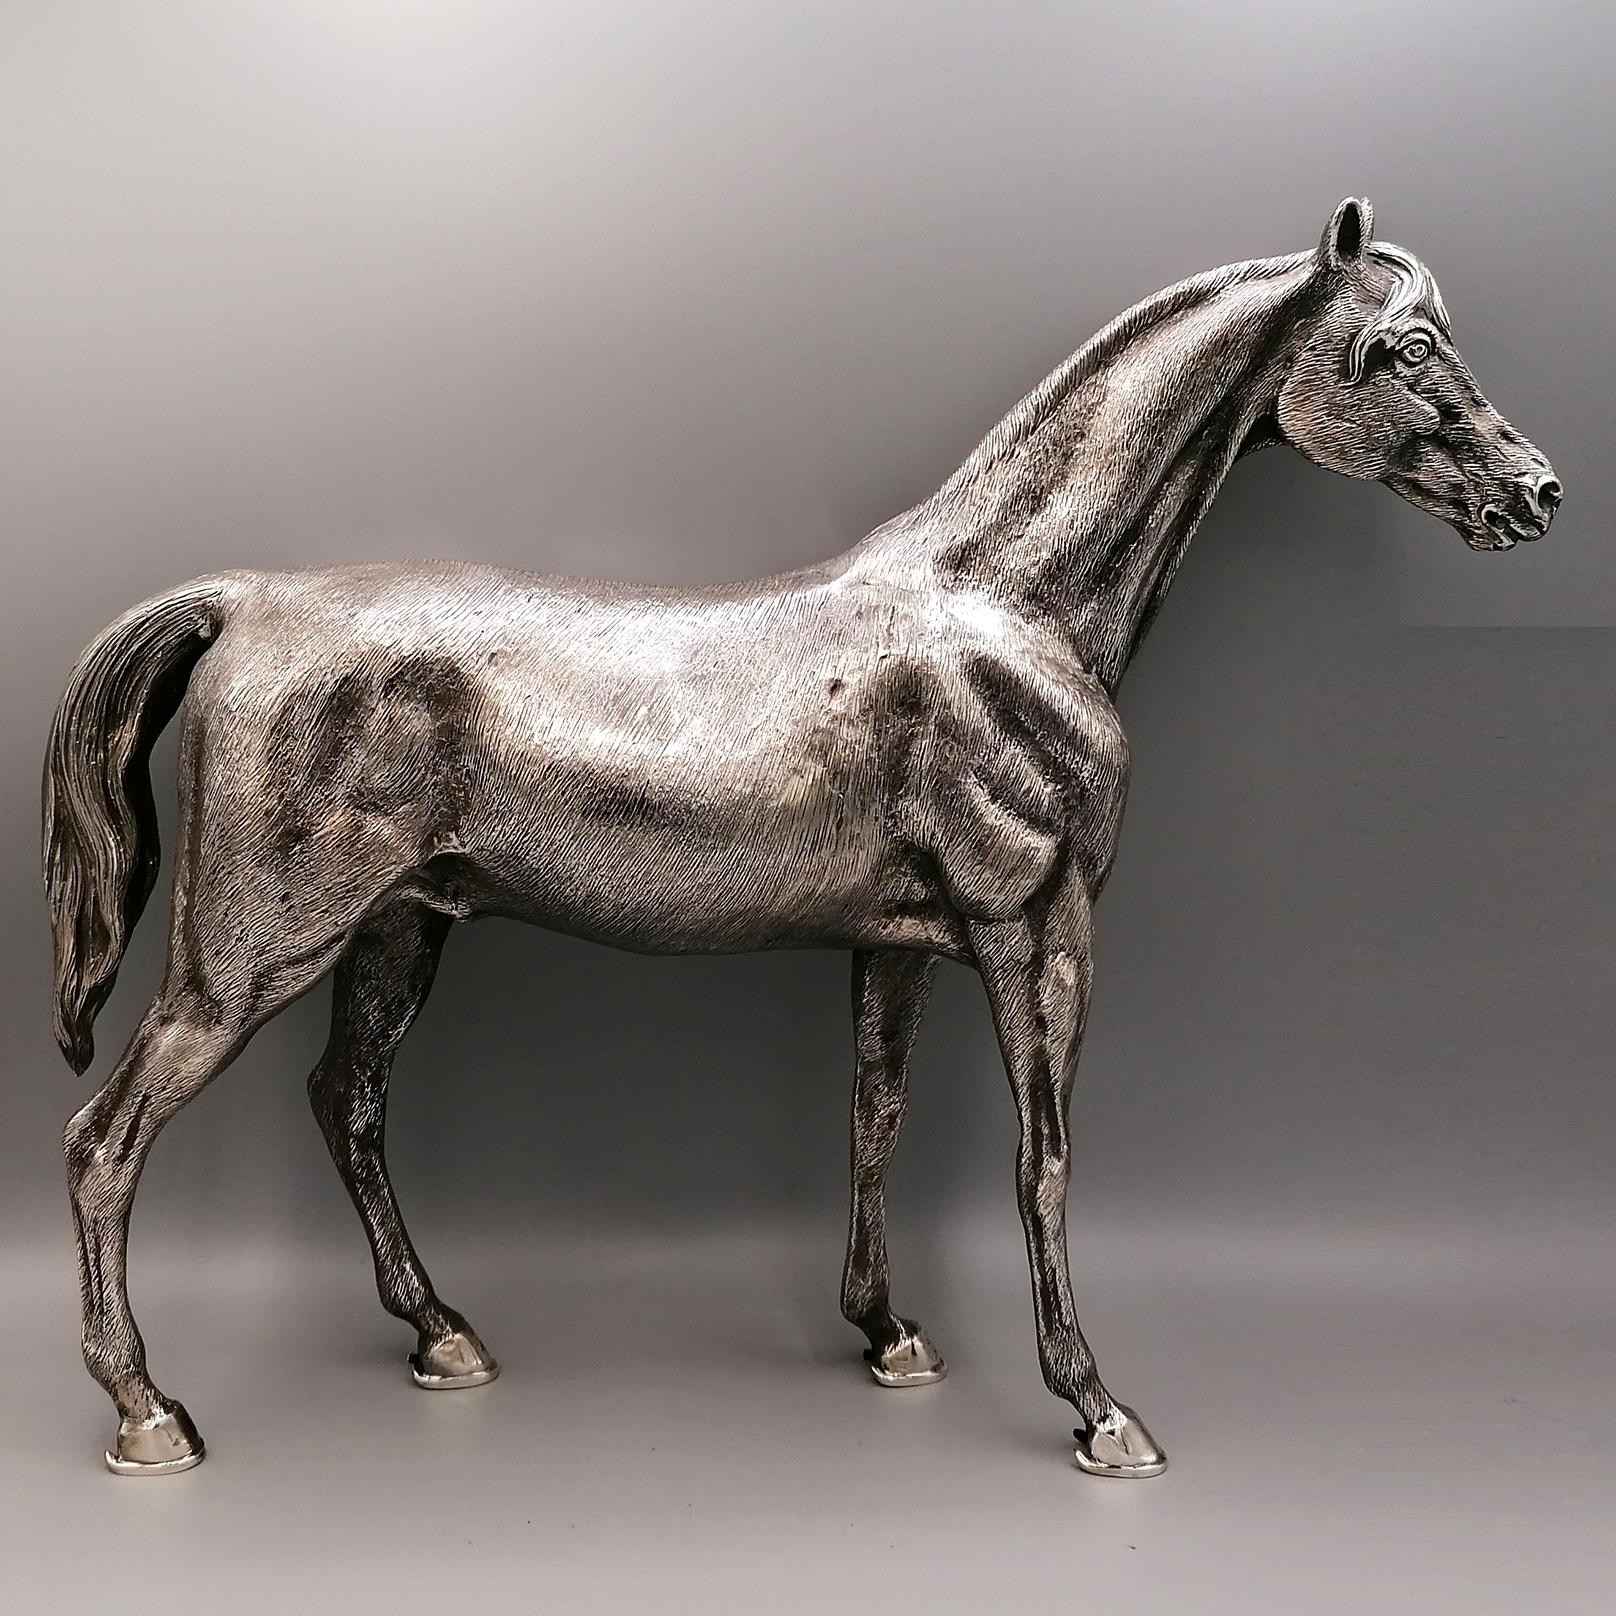 Pferdestatue aus massivem Silber 800 komplett handgefertigt. Das Pferd wurde in zwei Teilen mit der Technik des Schmelzens in der Erde hergestellt und nach dem Gießen und Lösen durch Schweißen verbunden. Anschließend wurde es gemeißelt, um die